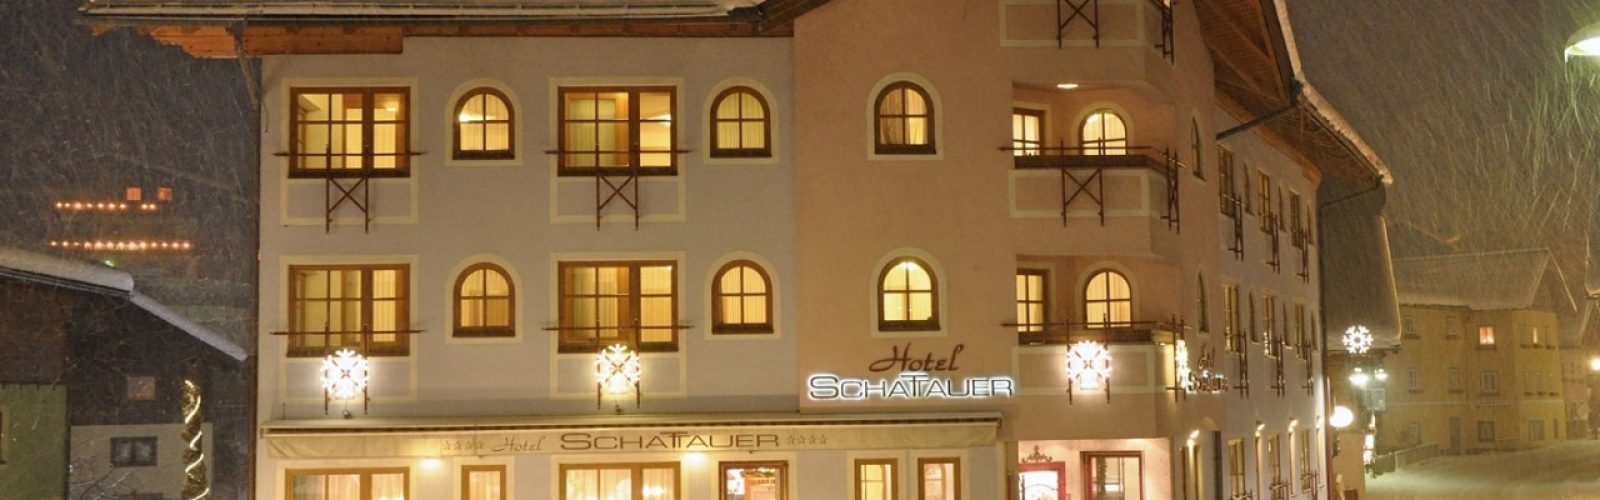 HOTEL SCHATTAUER, Wagrain- www.aktivøstrig.dk